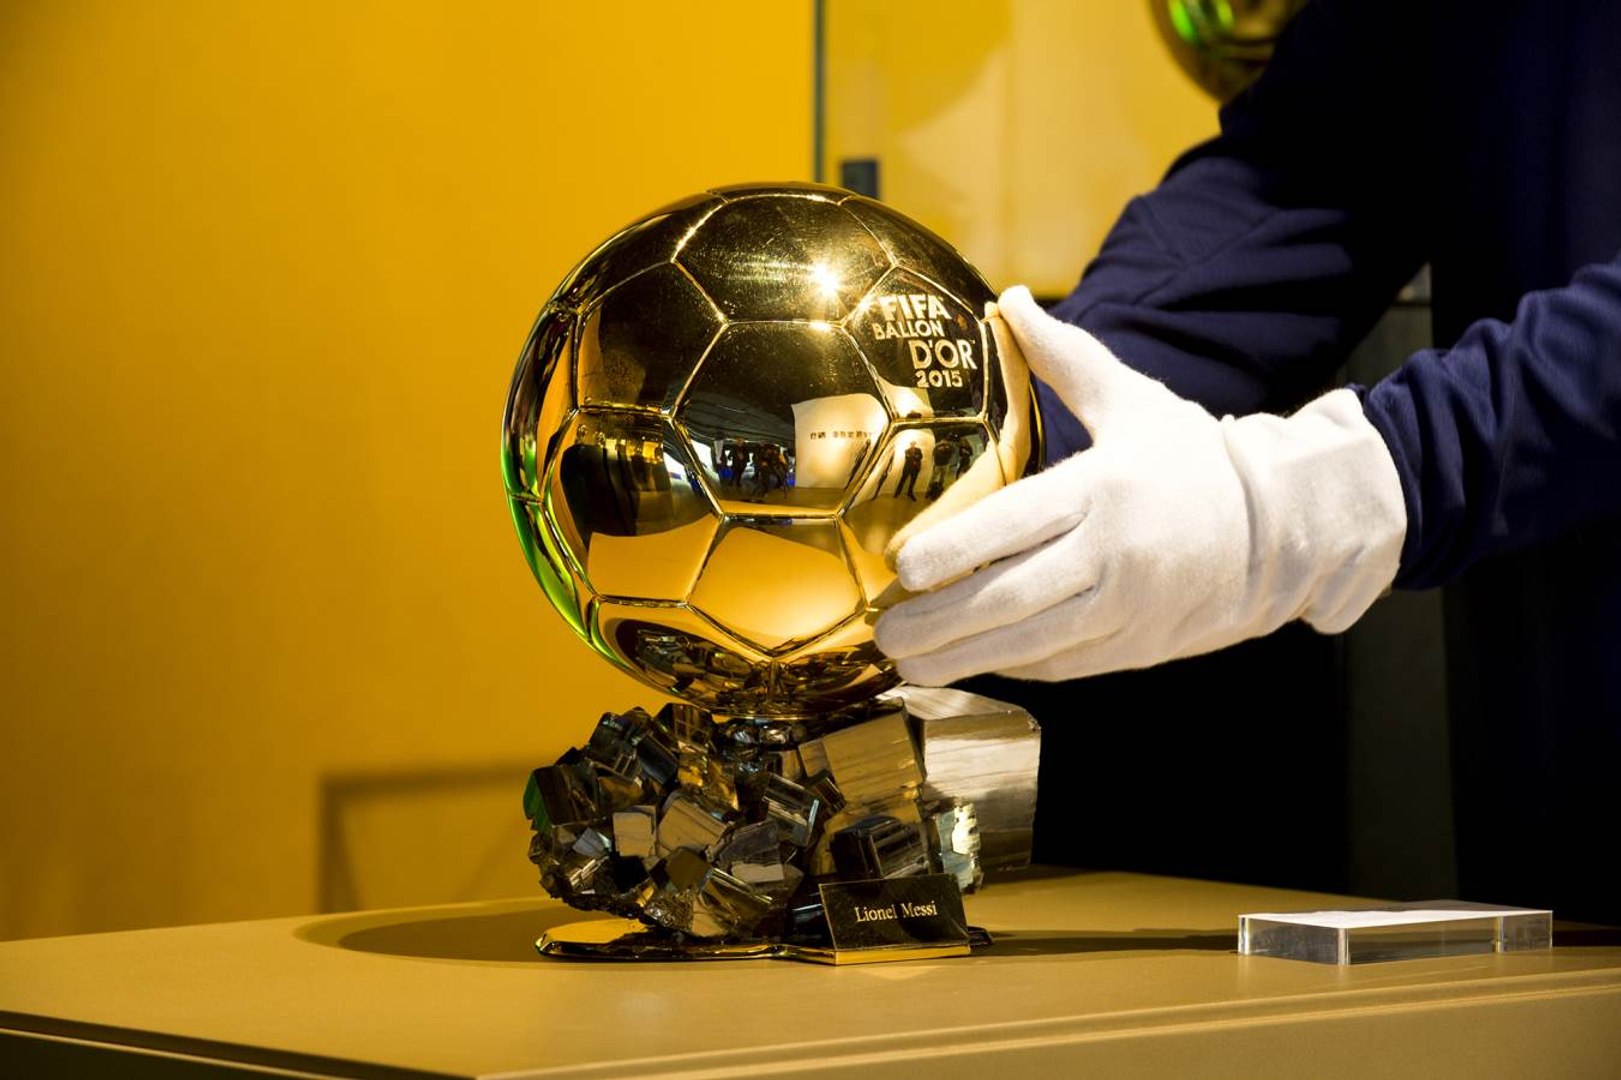 Le classement du Ballon d’or 2022 fuite, le Barça réagit sur les réseaux sociaux (photo)